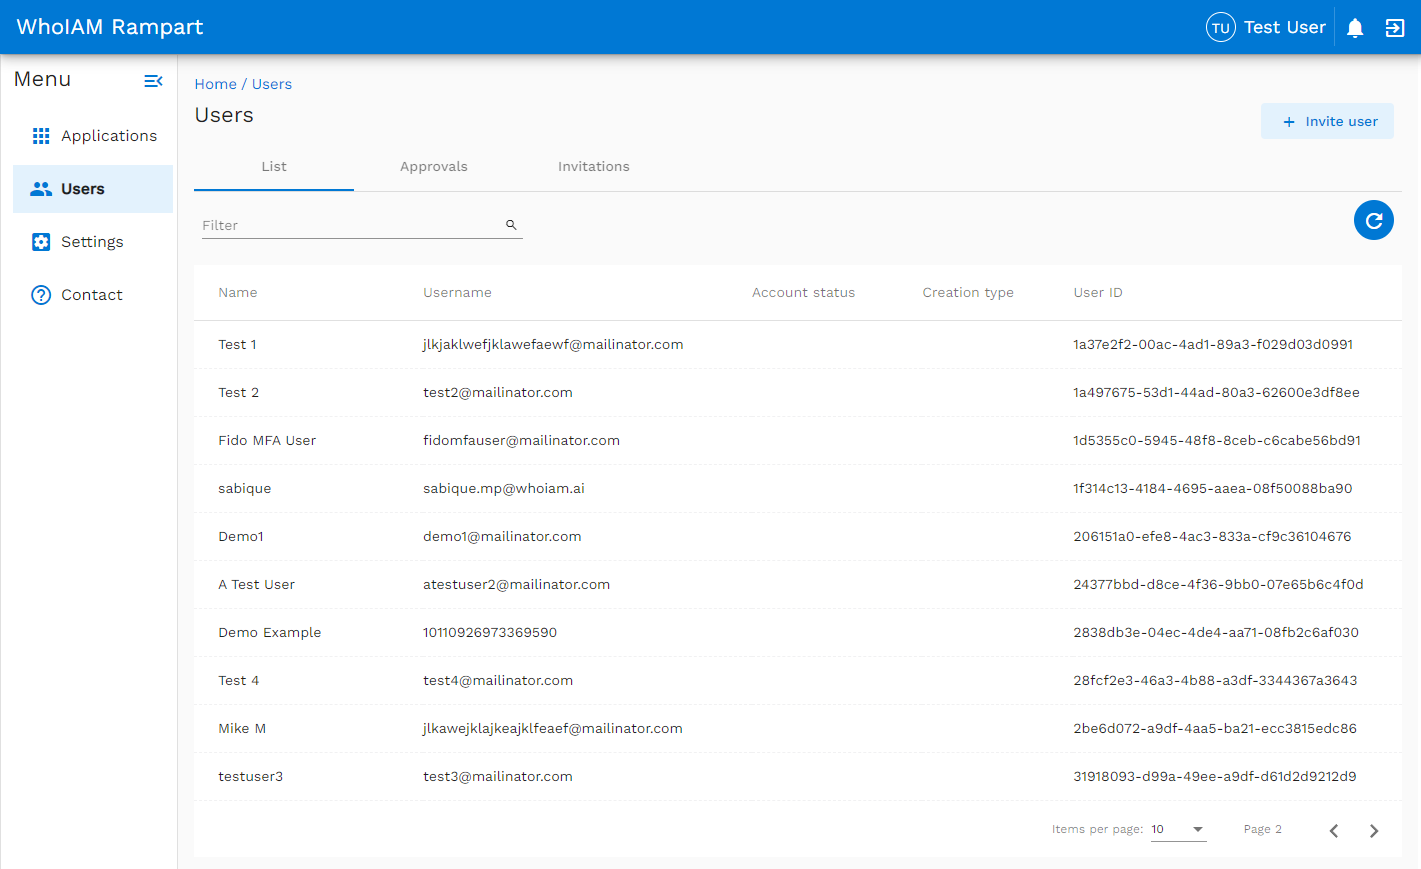 Снимок экрана: список пользователей WhoIAM Rampart в клиенте Azure AD B2C.